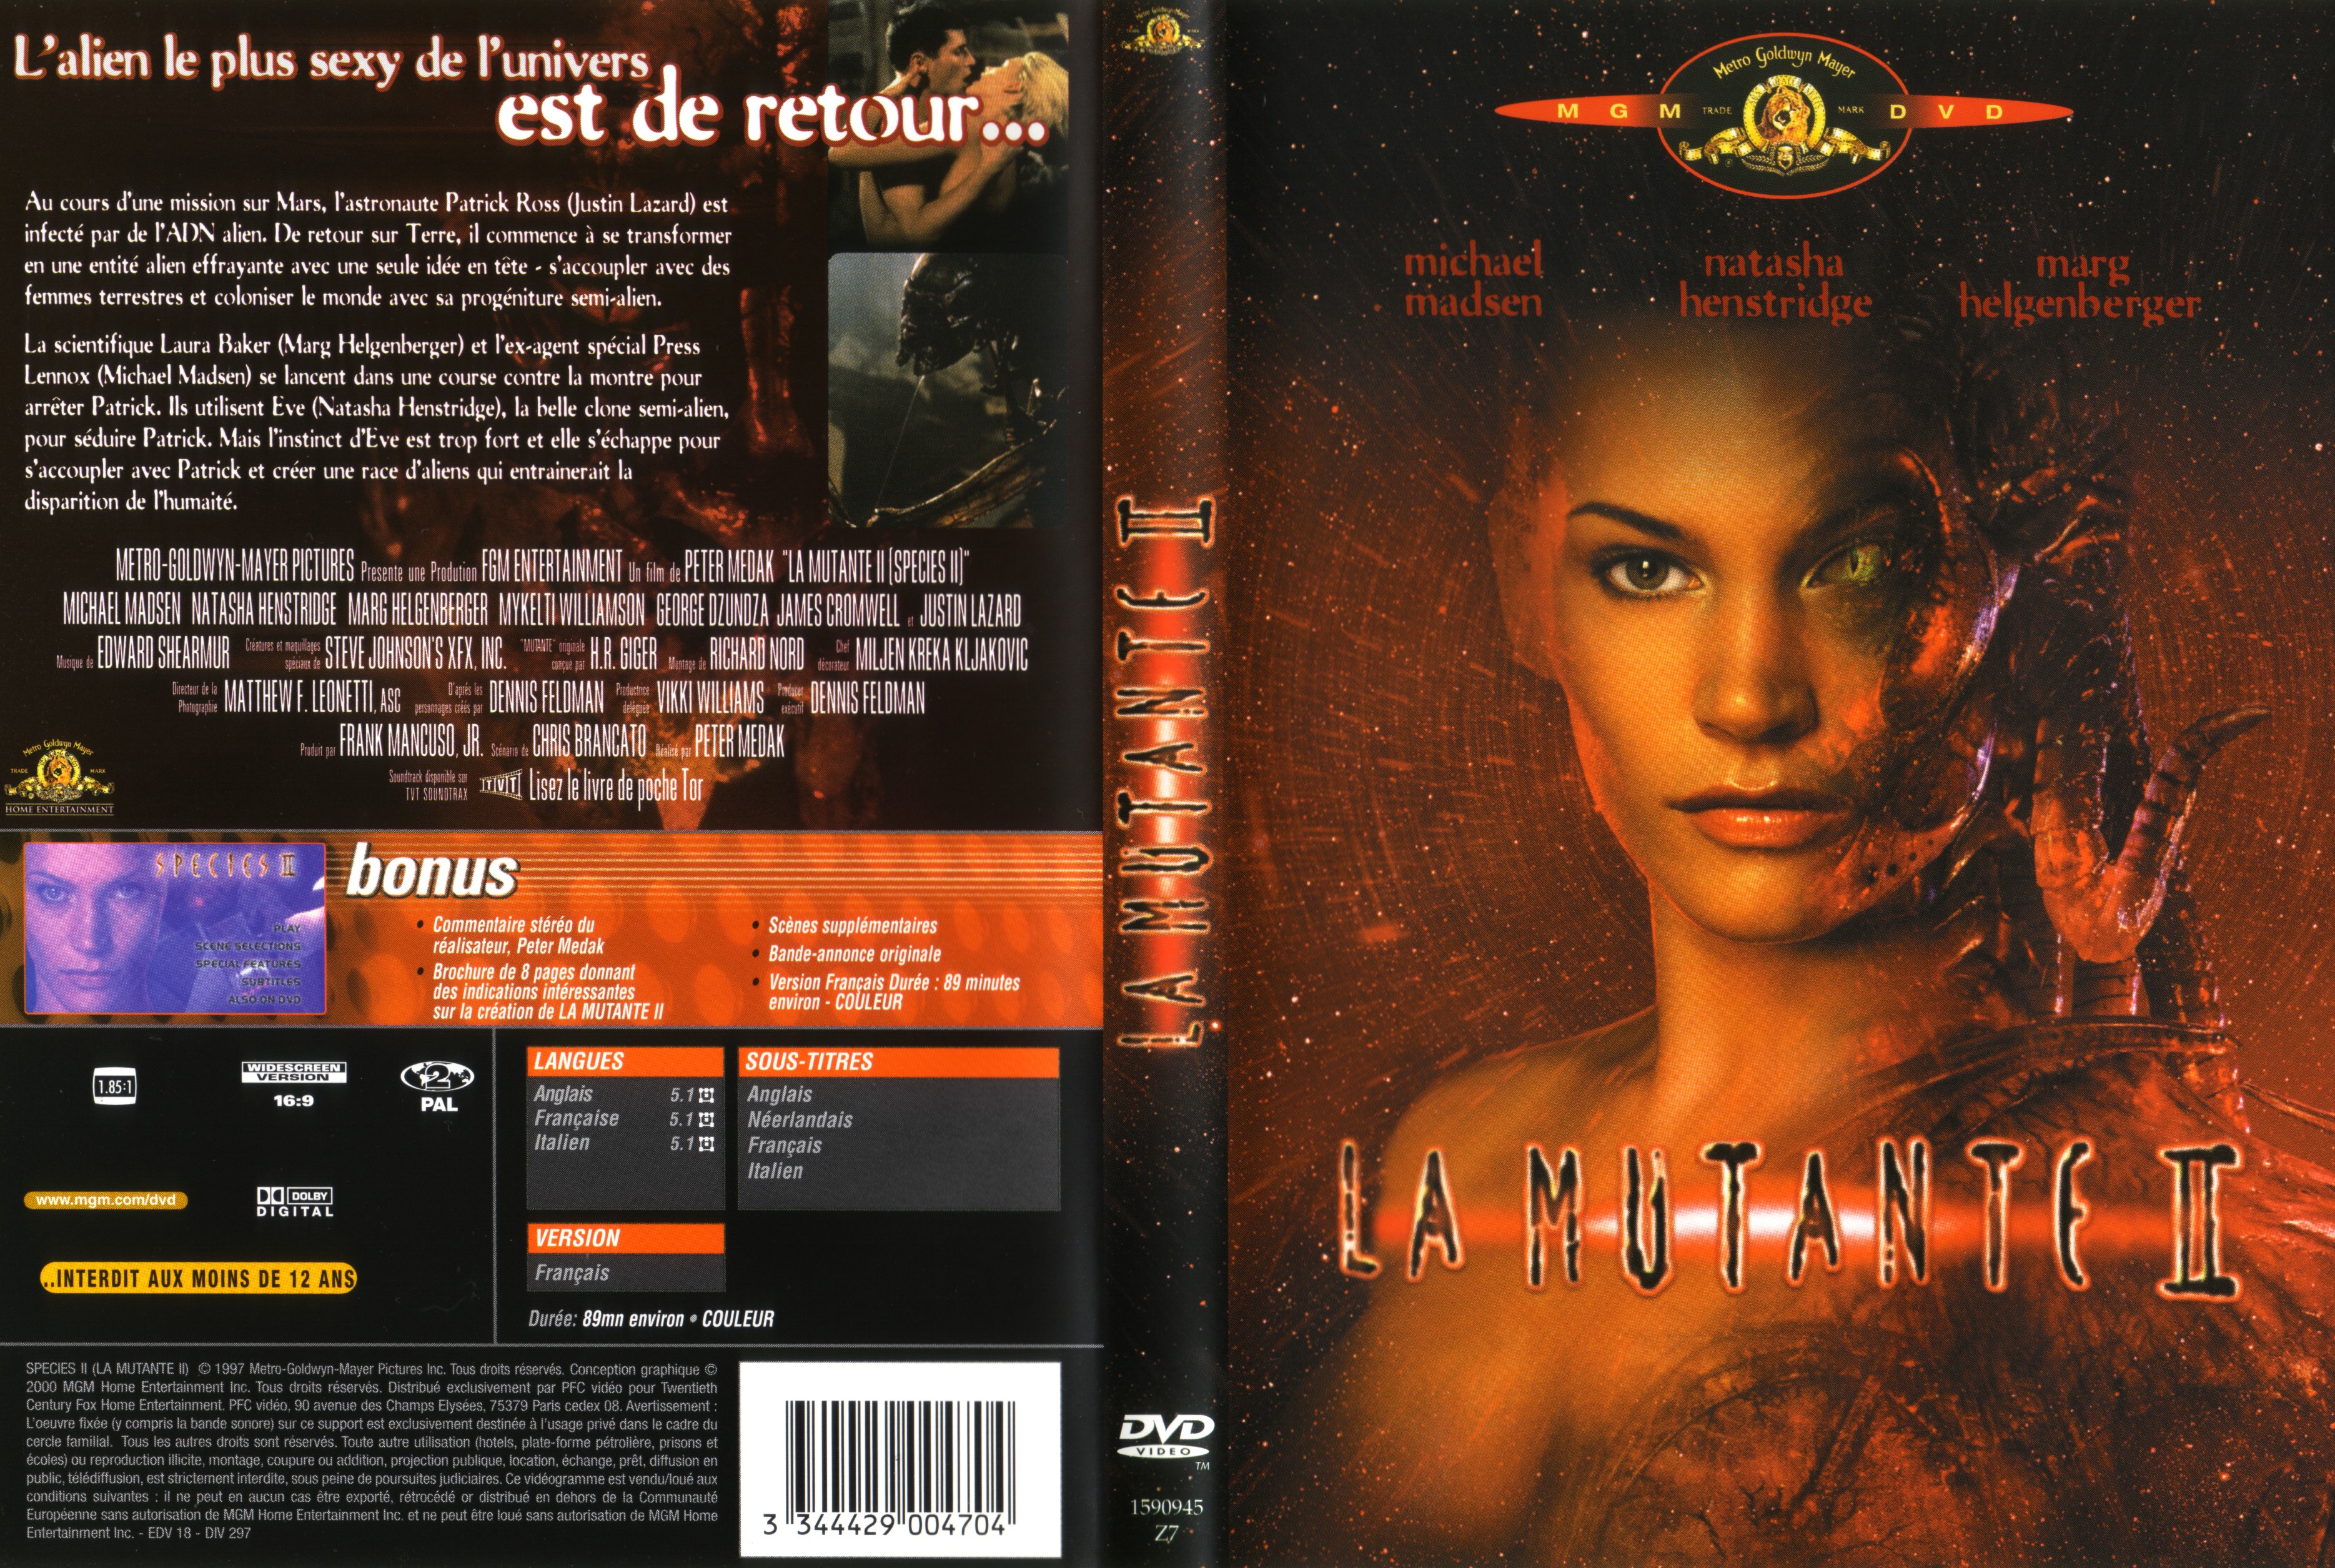 Jaquette DVD La mutante 2 v2